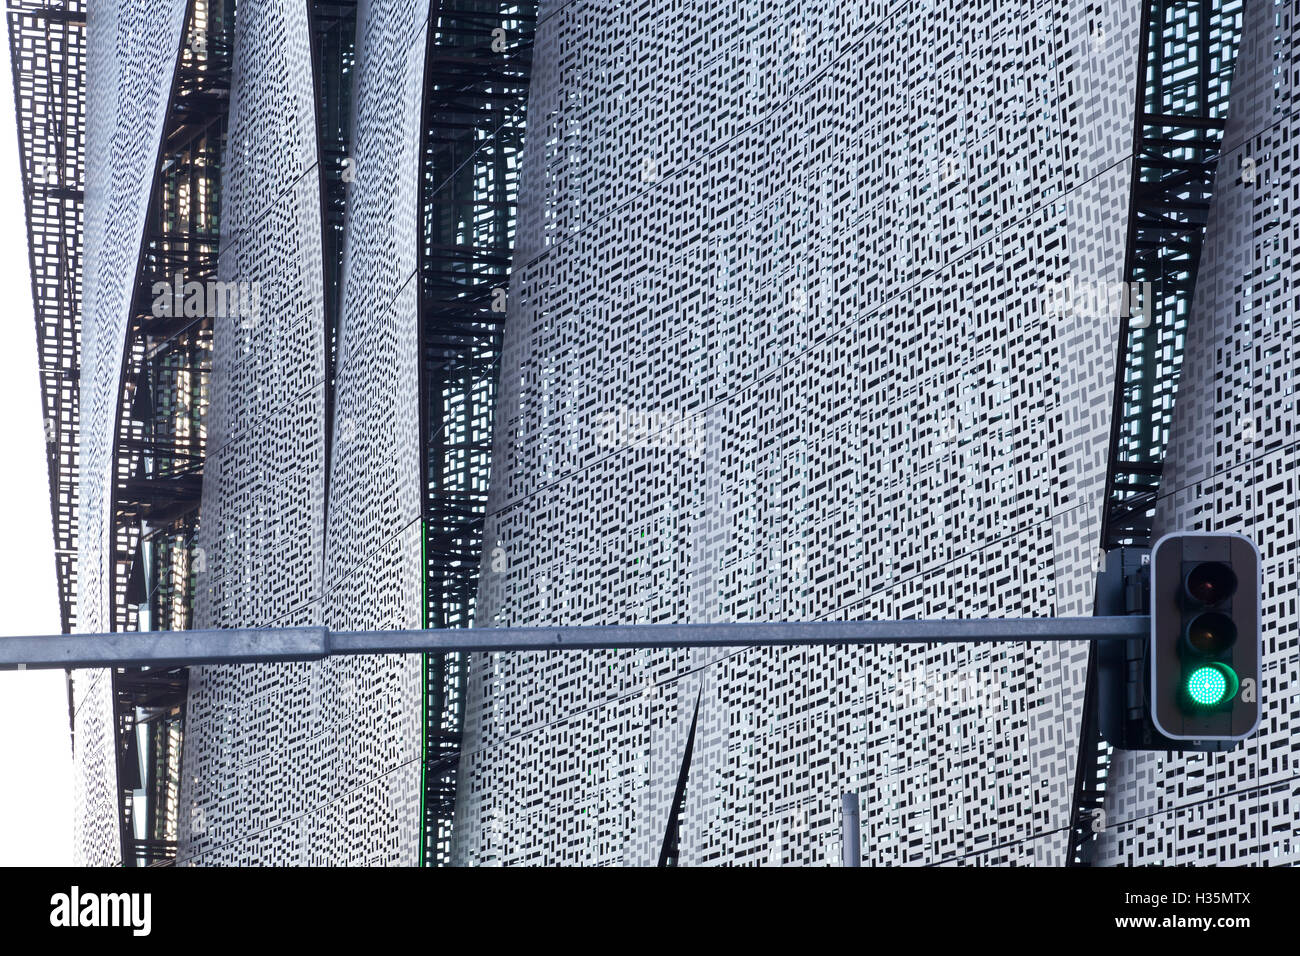 Detalle de la fachada del edificio FEIT, Universidad de Tecnología, Sydney, Australia. Foto de stock